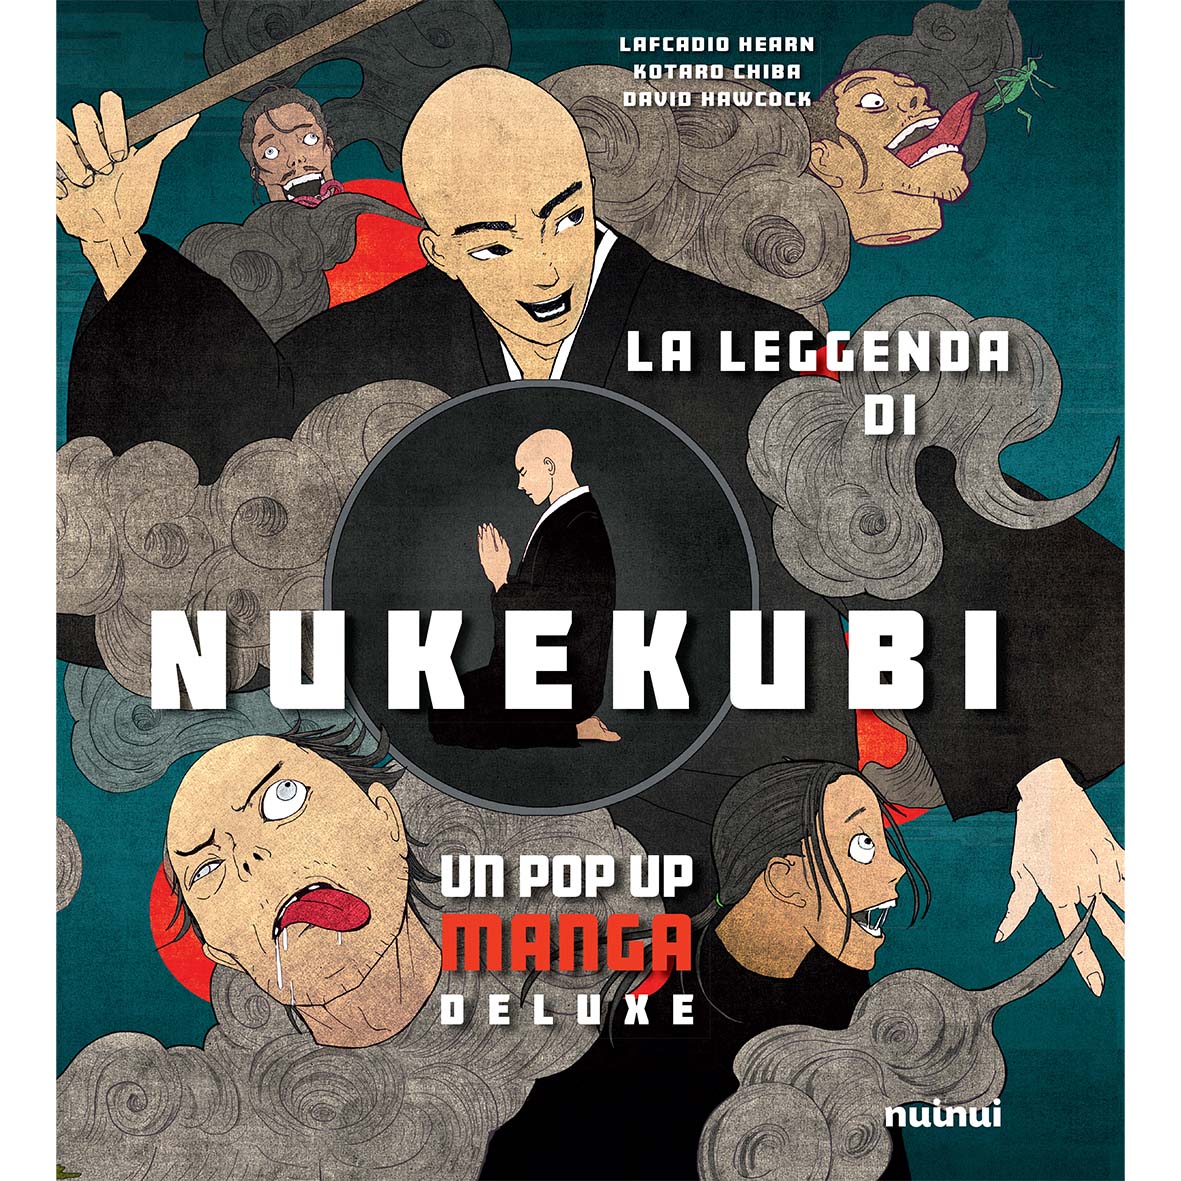 La leggenda di Nukekubi - Manga pop up deluxe